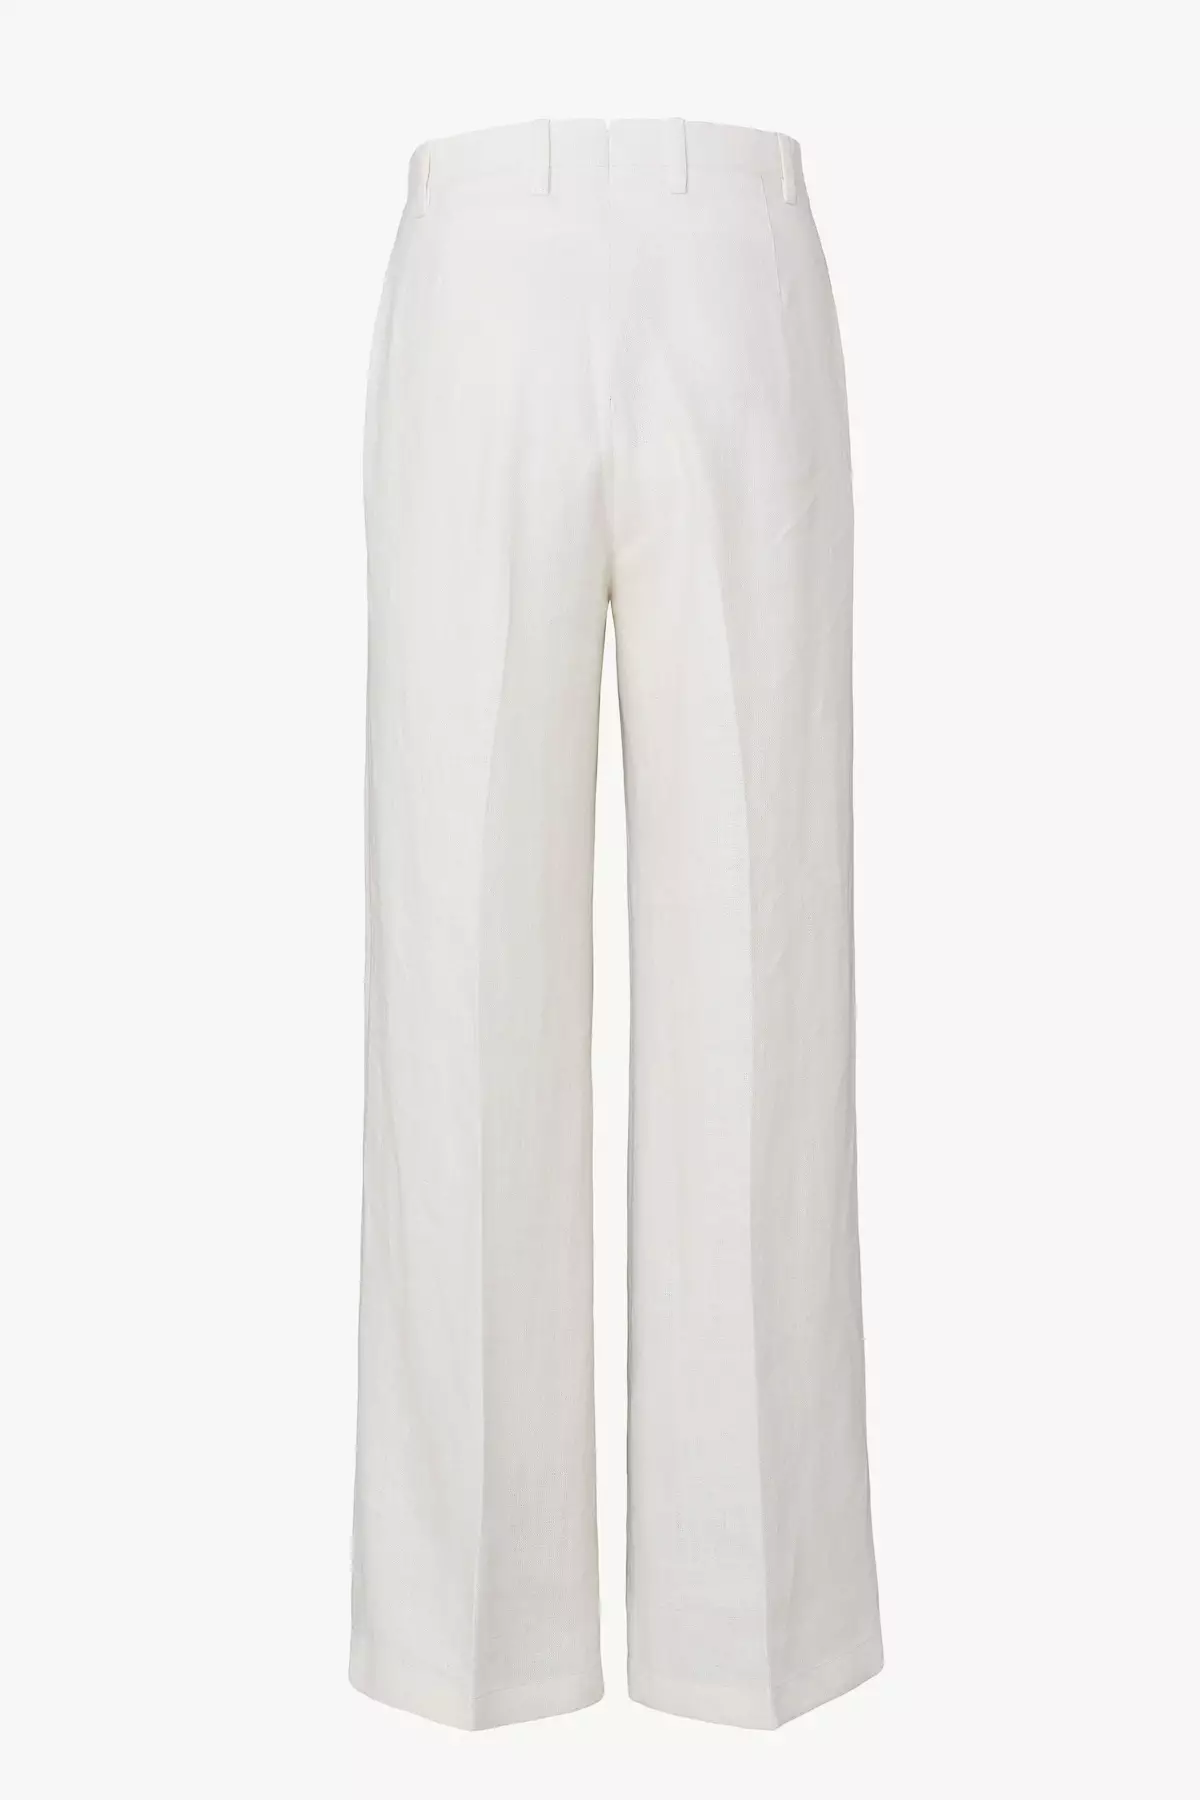 Jasmine Trousers in Linen - Giuliva Heritage